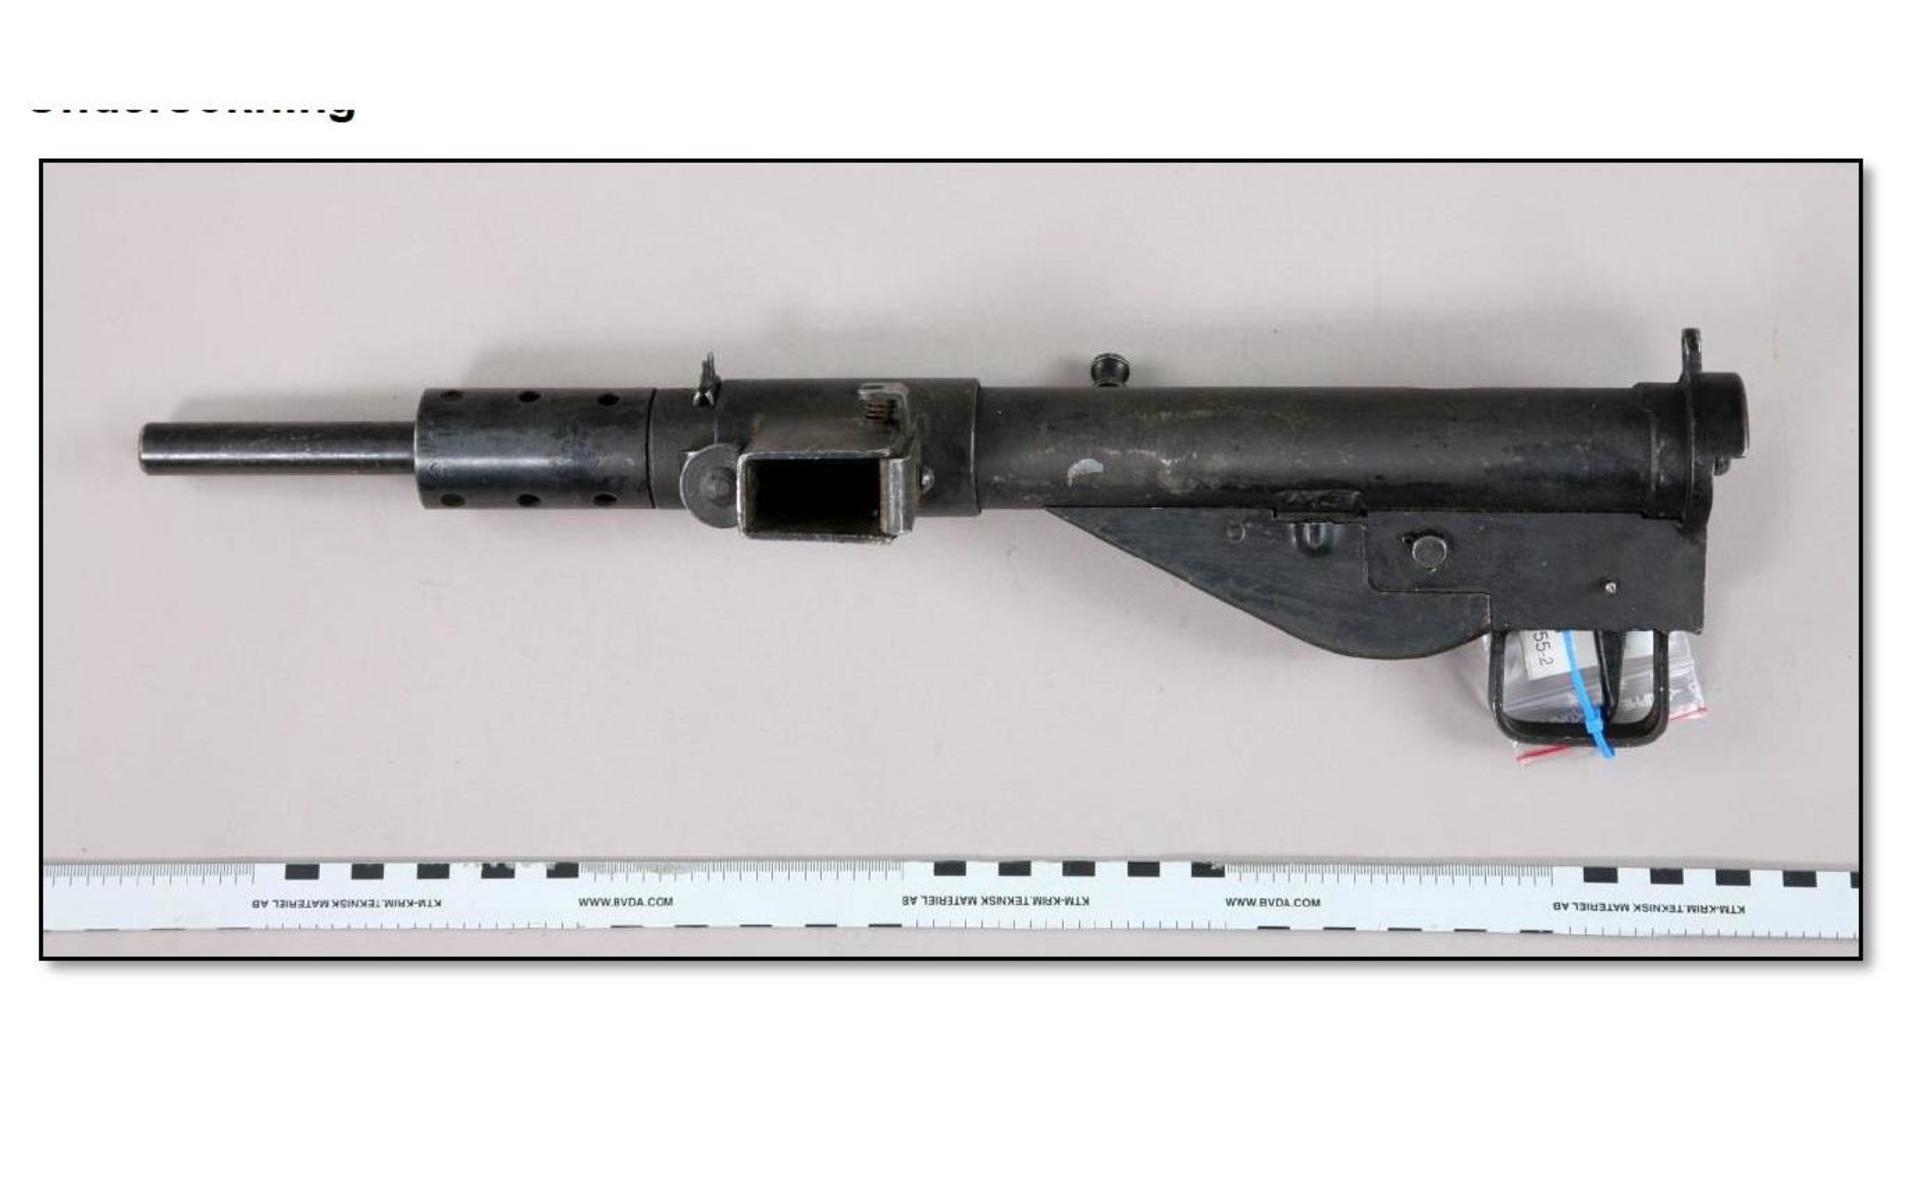 En kulsprutepistol i kaliber 9 mm. Enligt samlaren hade han fått den av en norsk motståndsman, till samlingen. Obrukbart i sitt nuvarande skick, men kräver ändå licens vilket mannen saknade. Bild: Polisen